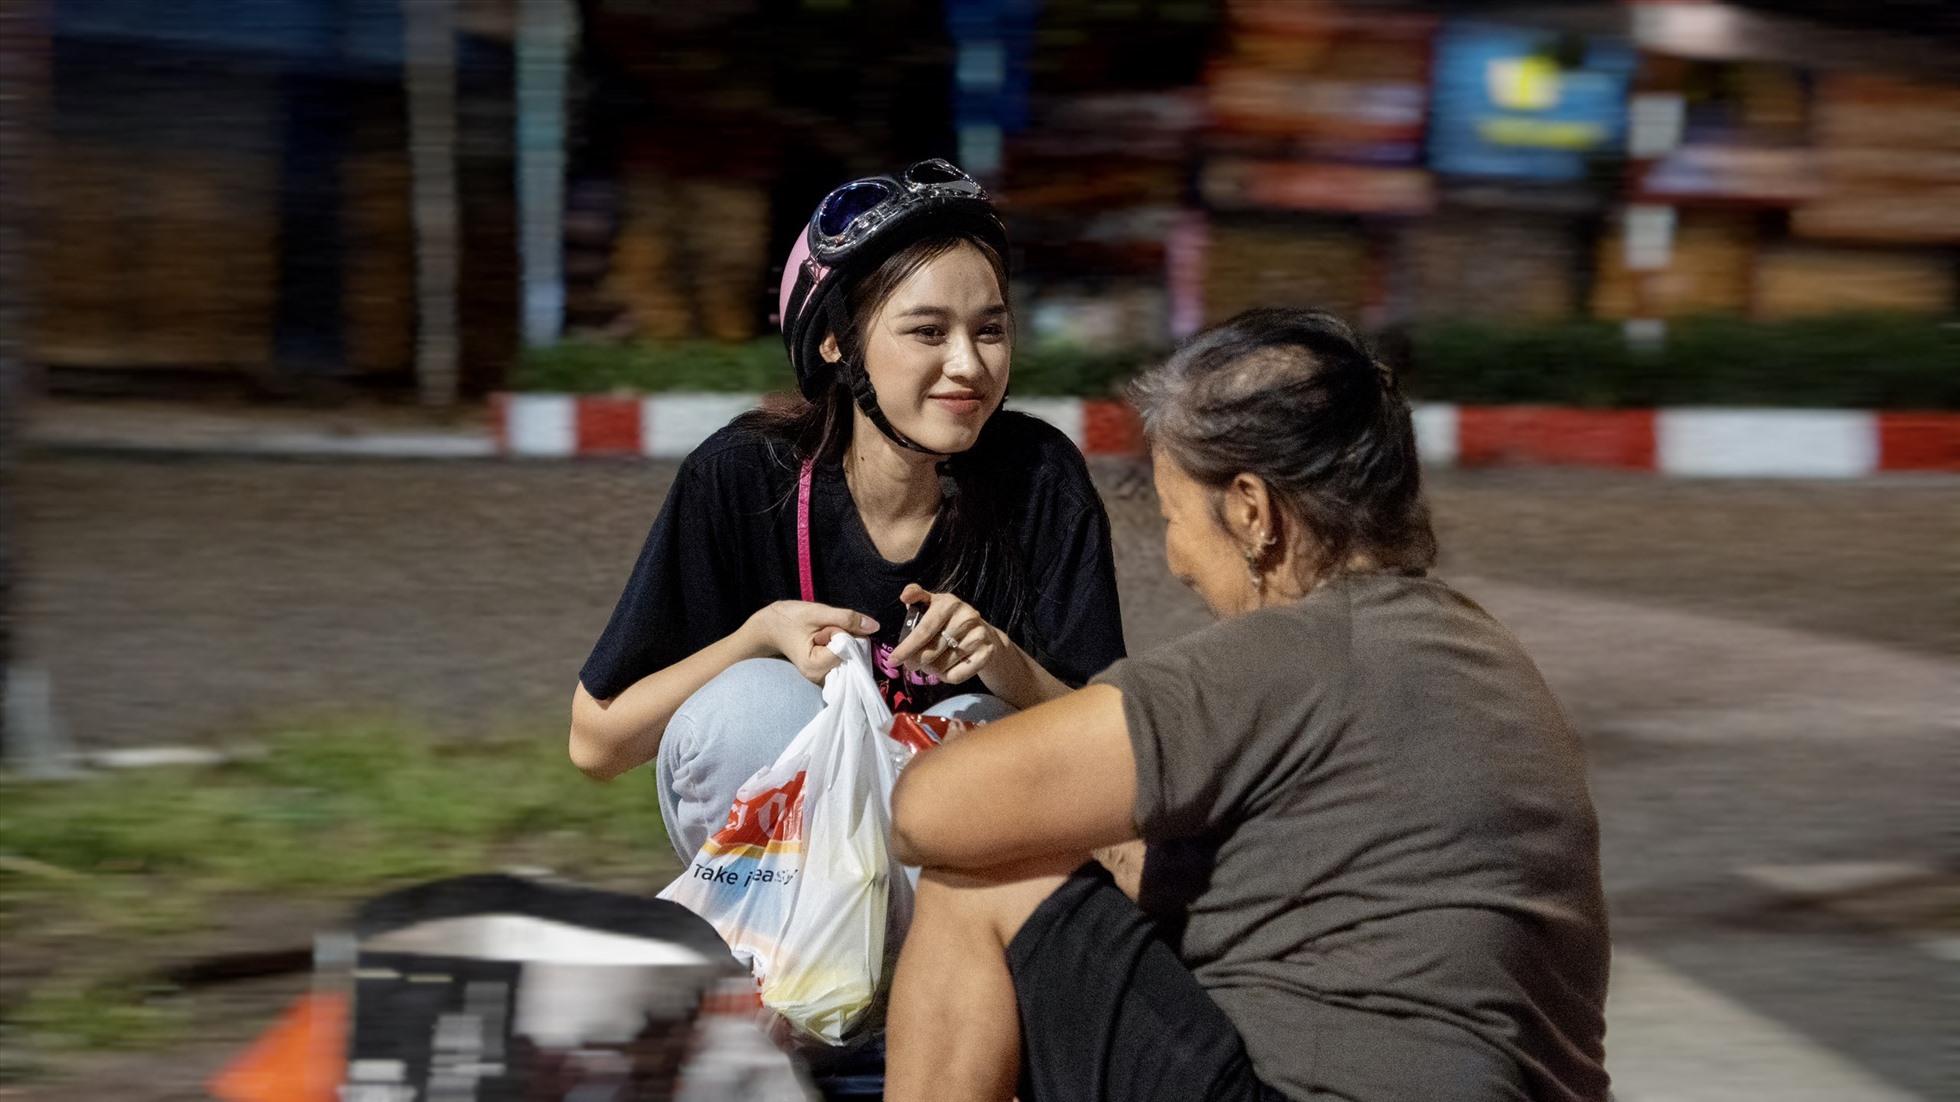 Rũ bỏ hình ảnh lộng lẫy, hào nhoáng trong các sự kiện, Hoa hậu Đỗ Thị Hà chung tay cùng mọi người phát những phần quà để giúp đỡ người nghèo, có hoàn cảnh đáng thương.